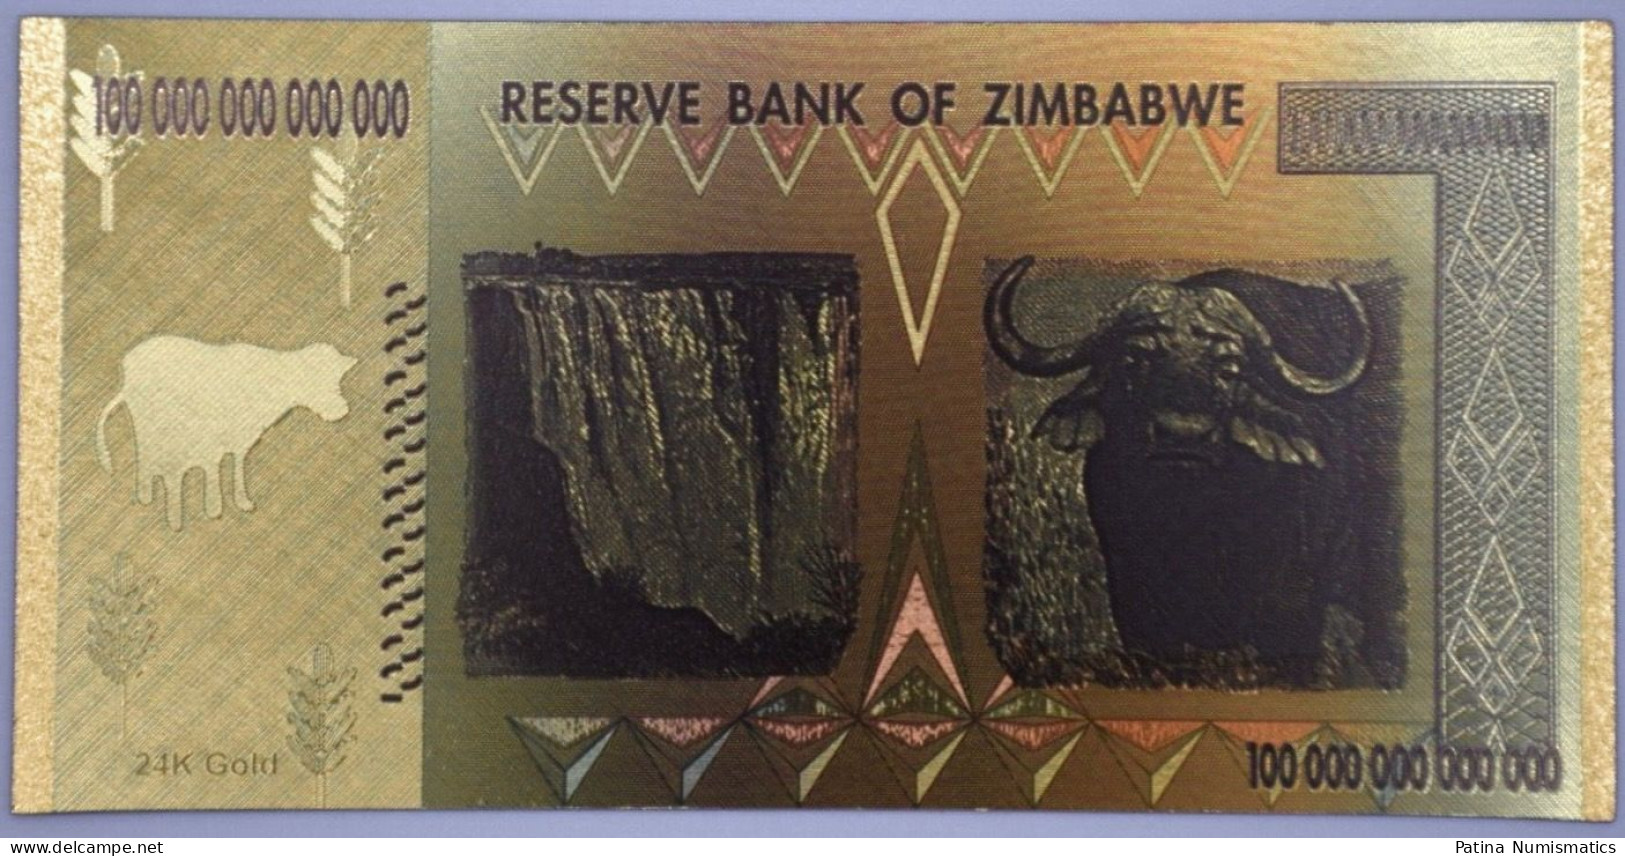 Zimbabwe $100 100 Trillion Dollars Gold Banknote Money Collection Novelty - Simbabwe